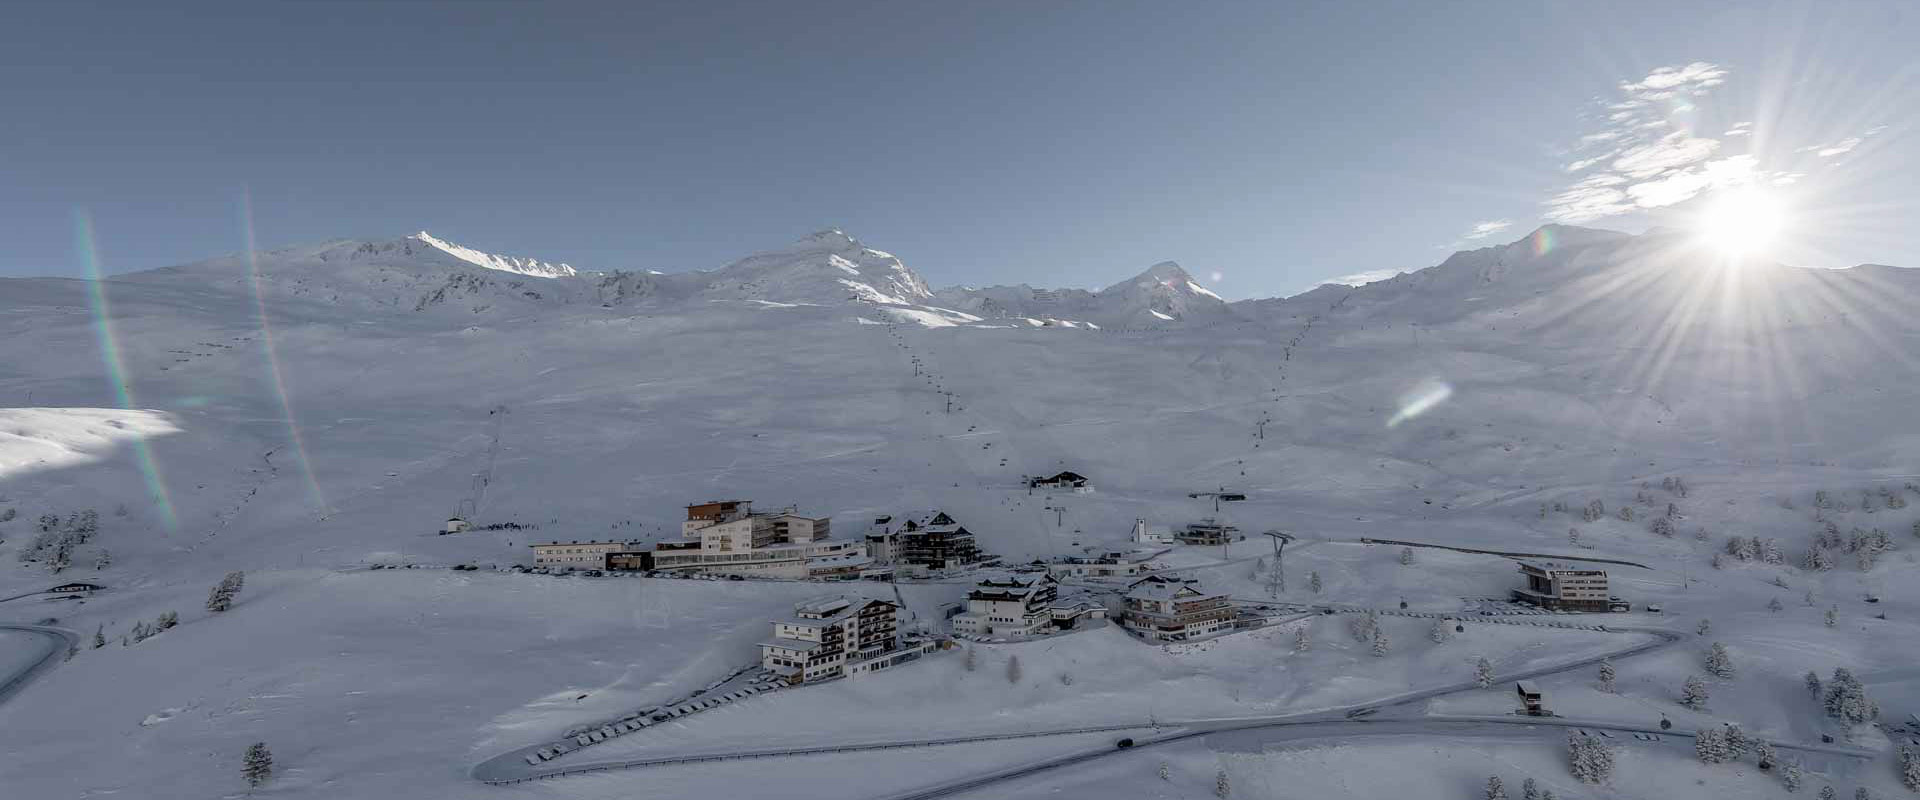 Skifahren in Obergurgl-Hochgurgl bedeutet Wintersport pur - Wohnen auf 2.150m direkt an der Skipiste